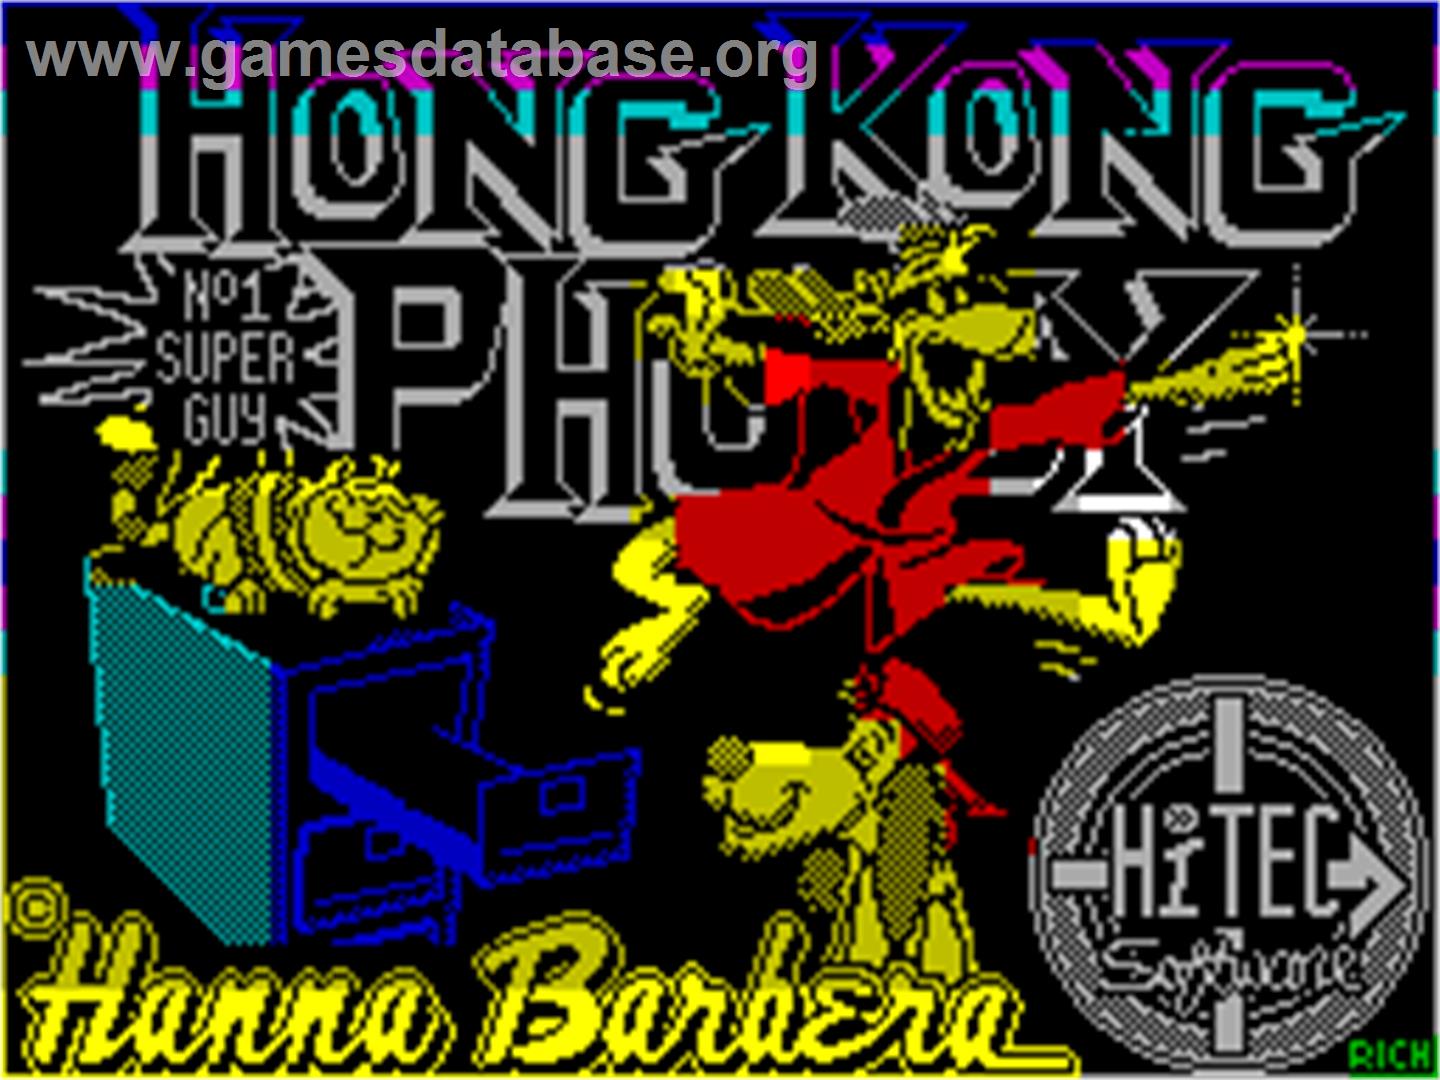 Hong Kong Phooey: No.1 Super Guy - Sinclair ZX Spectrum - Artwork - Title Screen